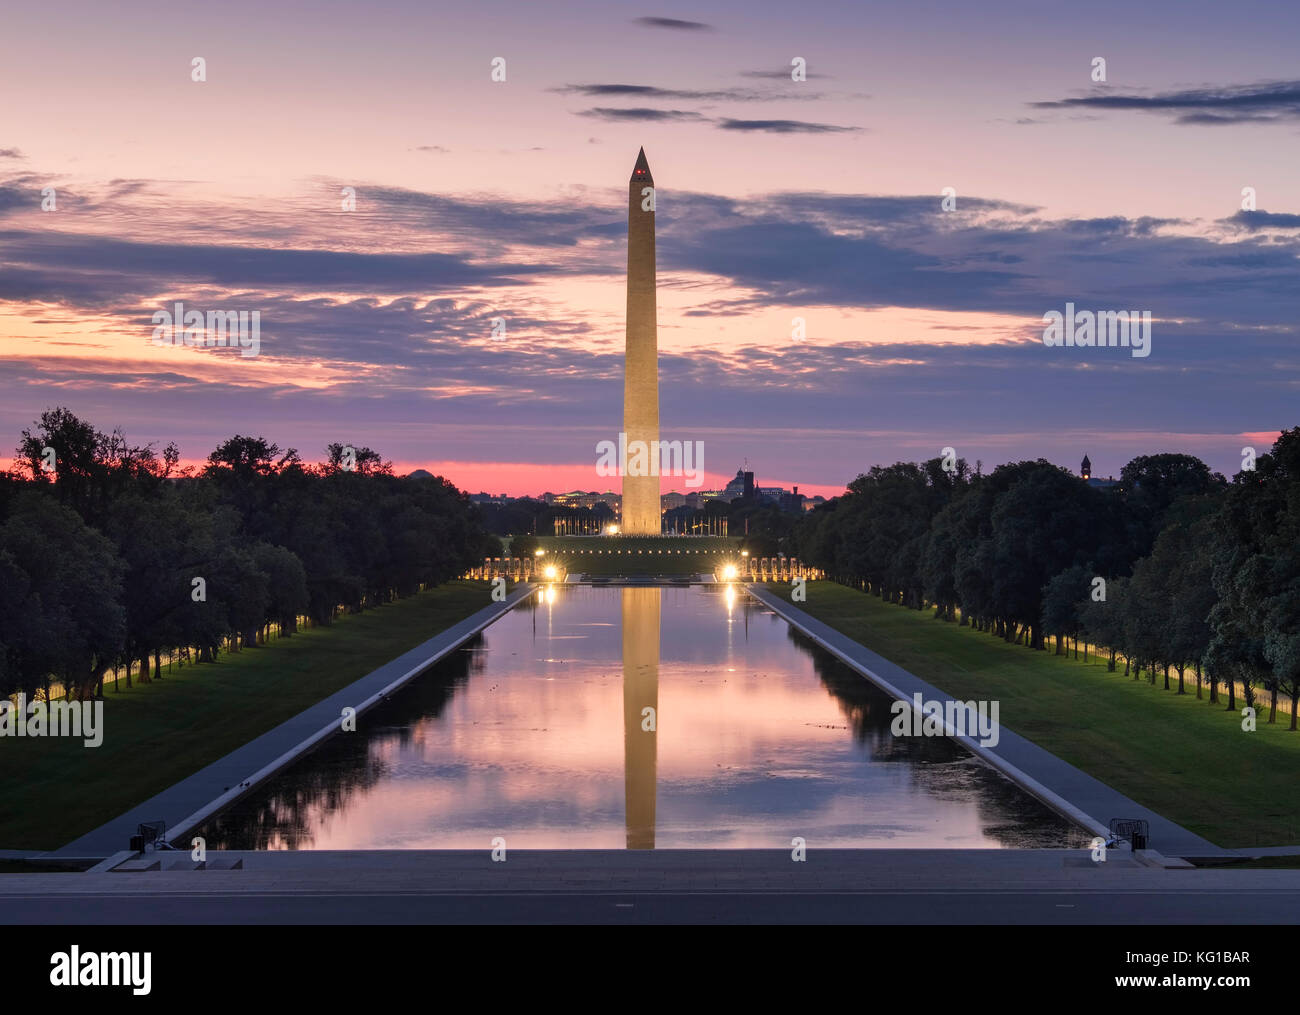 The Washington Monument and Reflecting Pool at sunrise, National Mall, Washington DC, USA Stock Photo